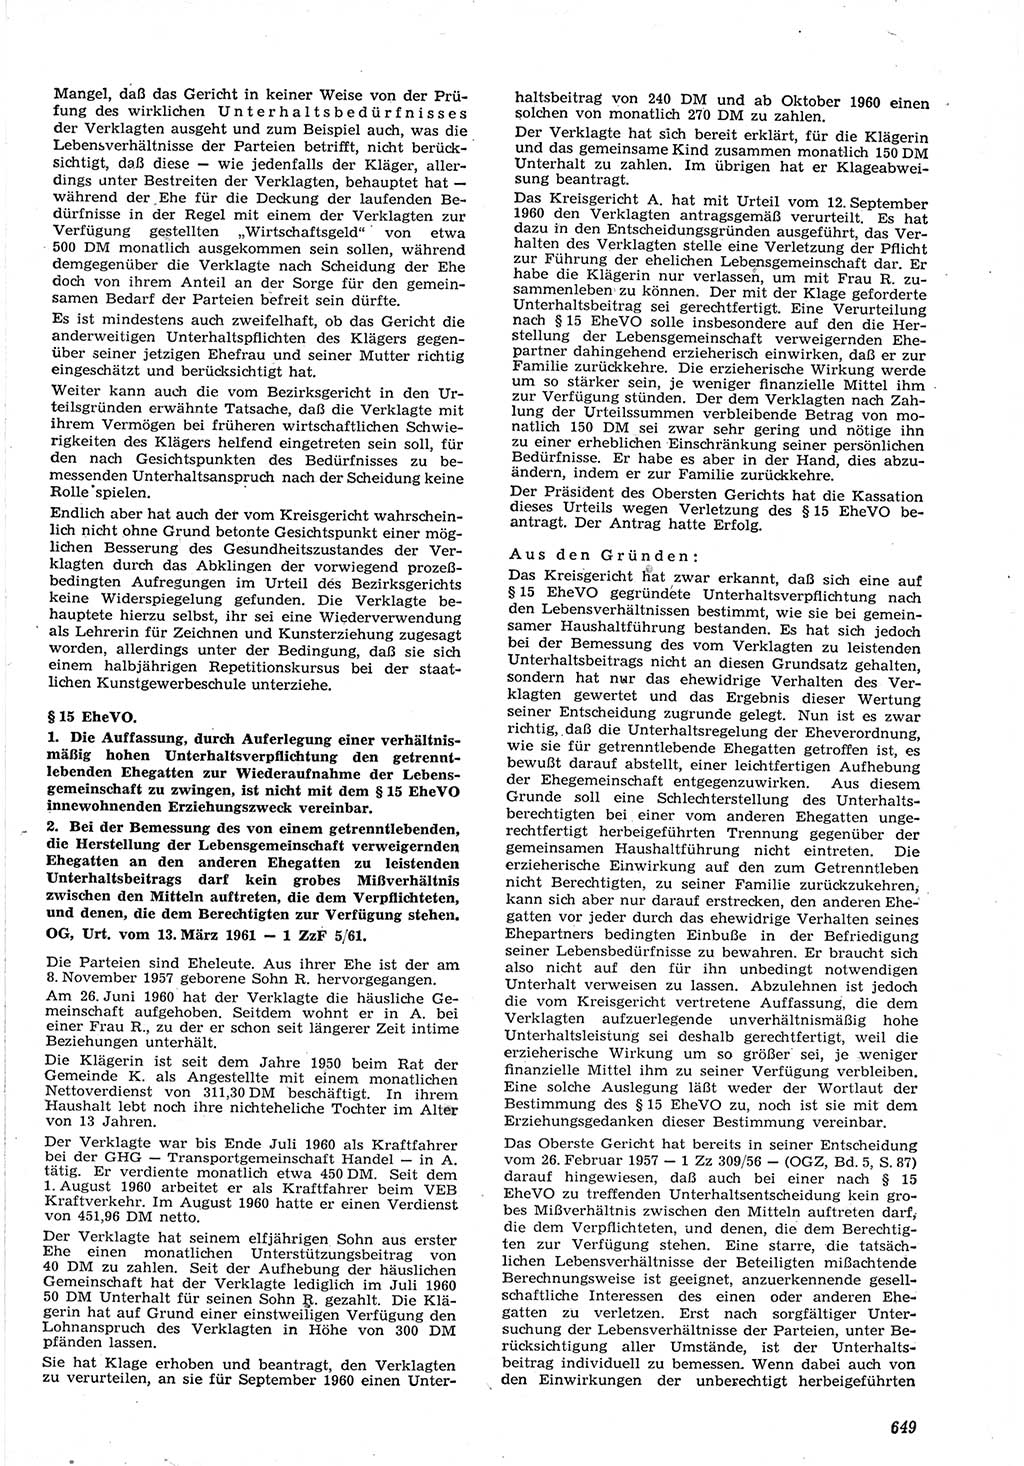 Neue Justiz (NJ), Zeitschrift für Recht und Rechtswissenschaft [Deutsche Demokratische Republik (DDR)], 15. Jahrgang 1961, Seite 649 (NJ DDR 1961, S. 649)